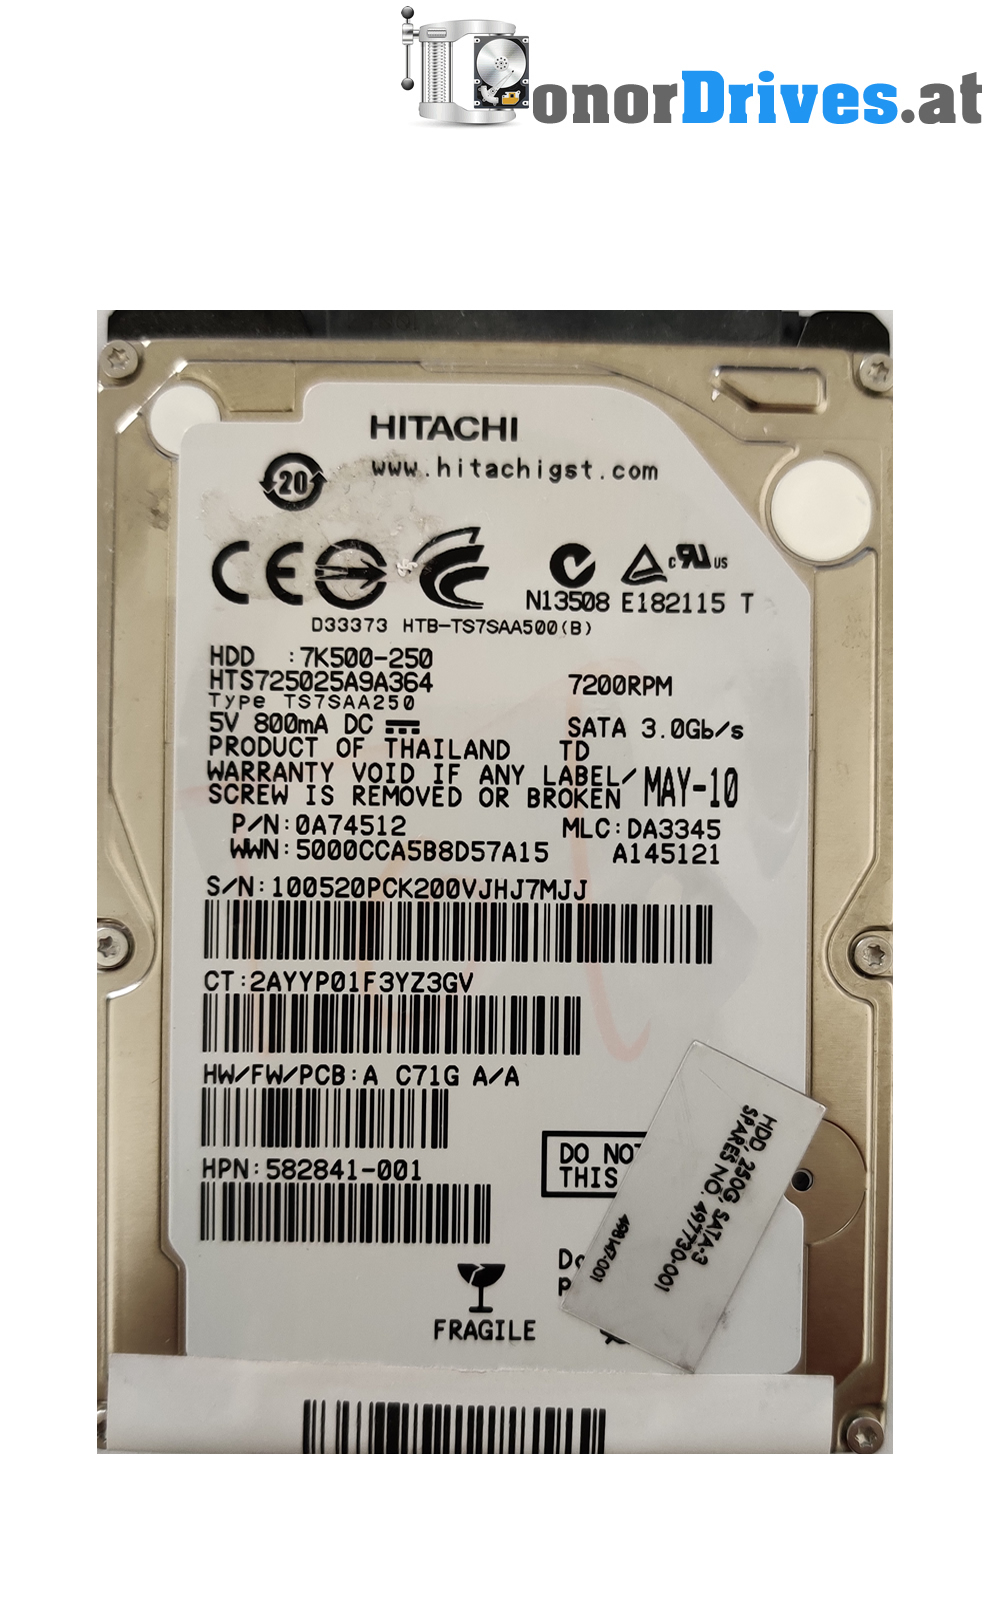 Hitachi HTS547550A9E384 - 0J15341- SATA - 500 GB - PCB 220 0A90269 01 Rev.